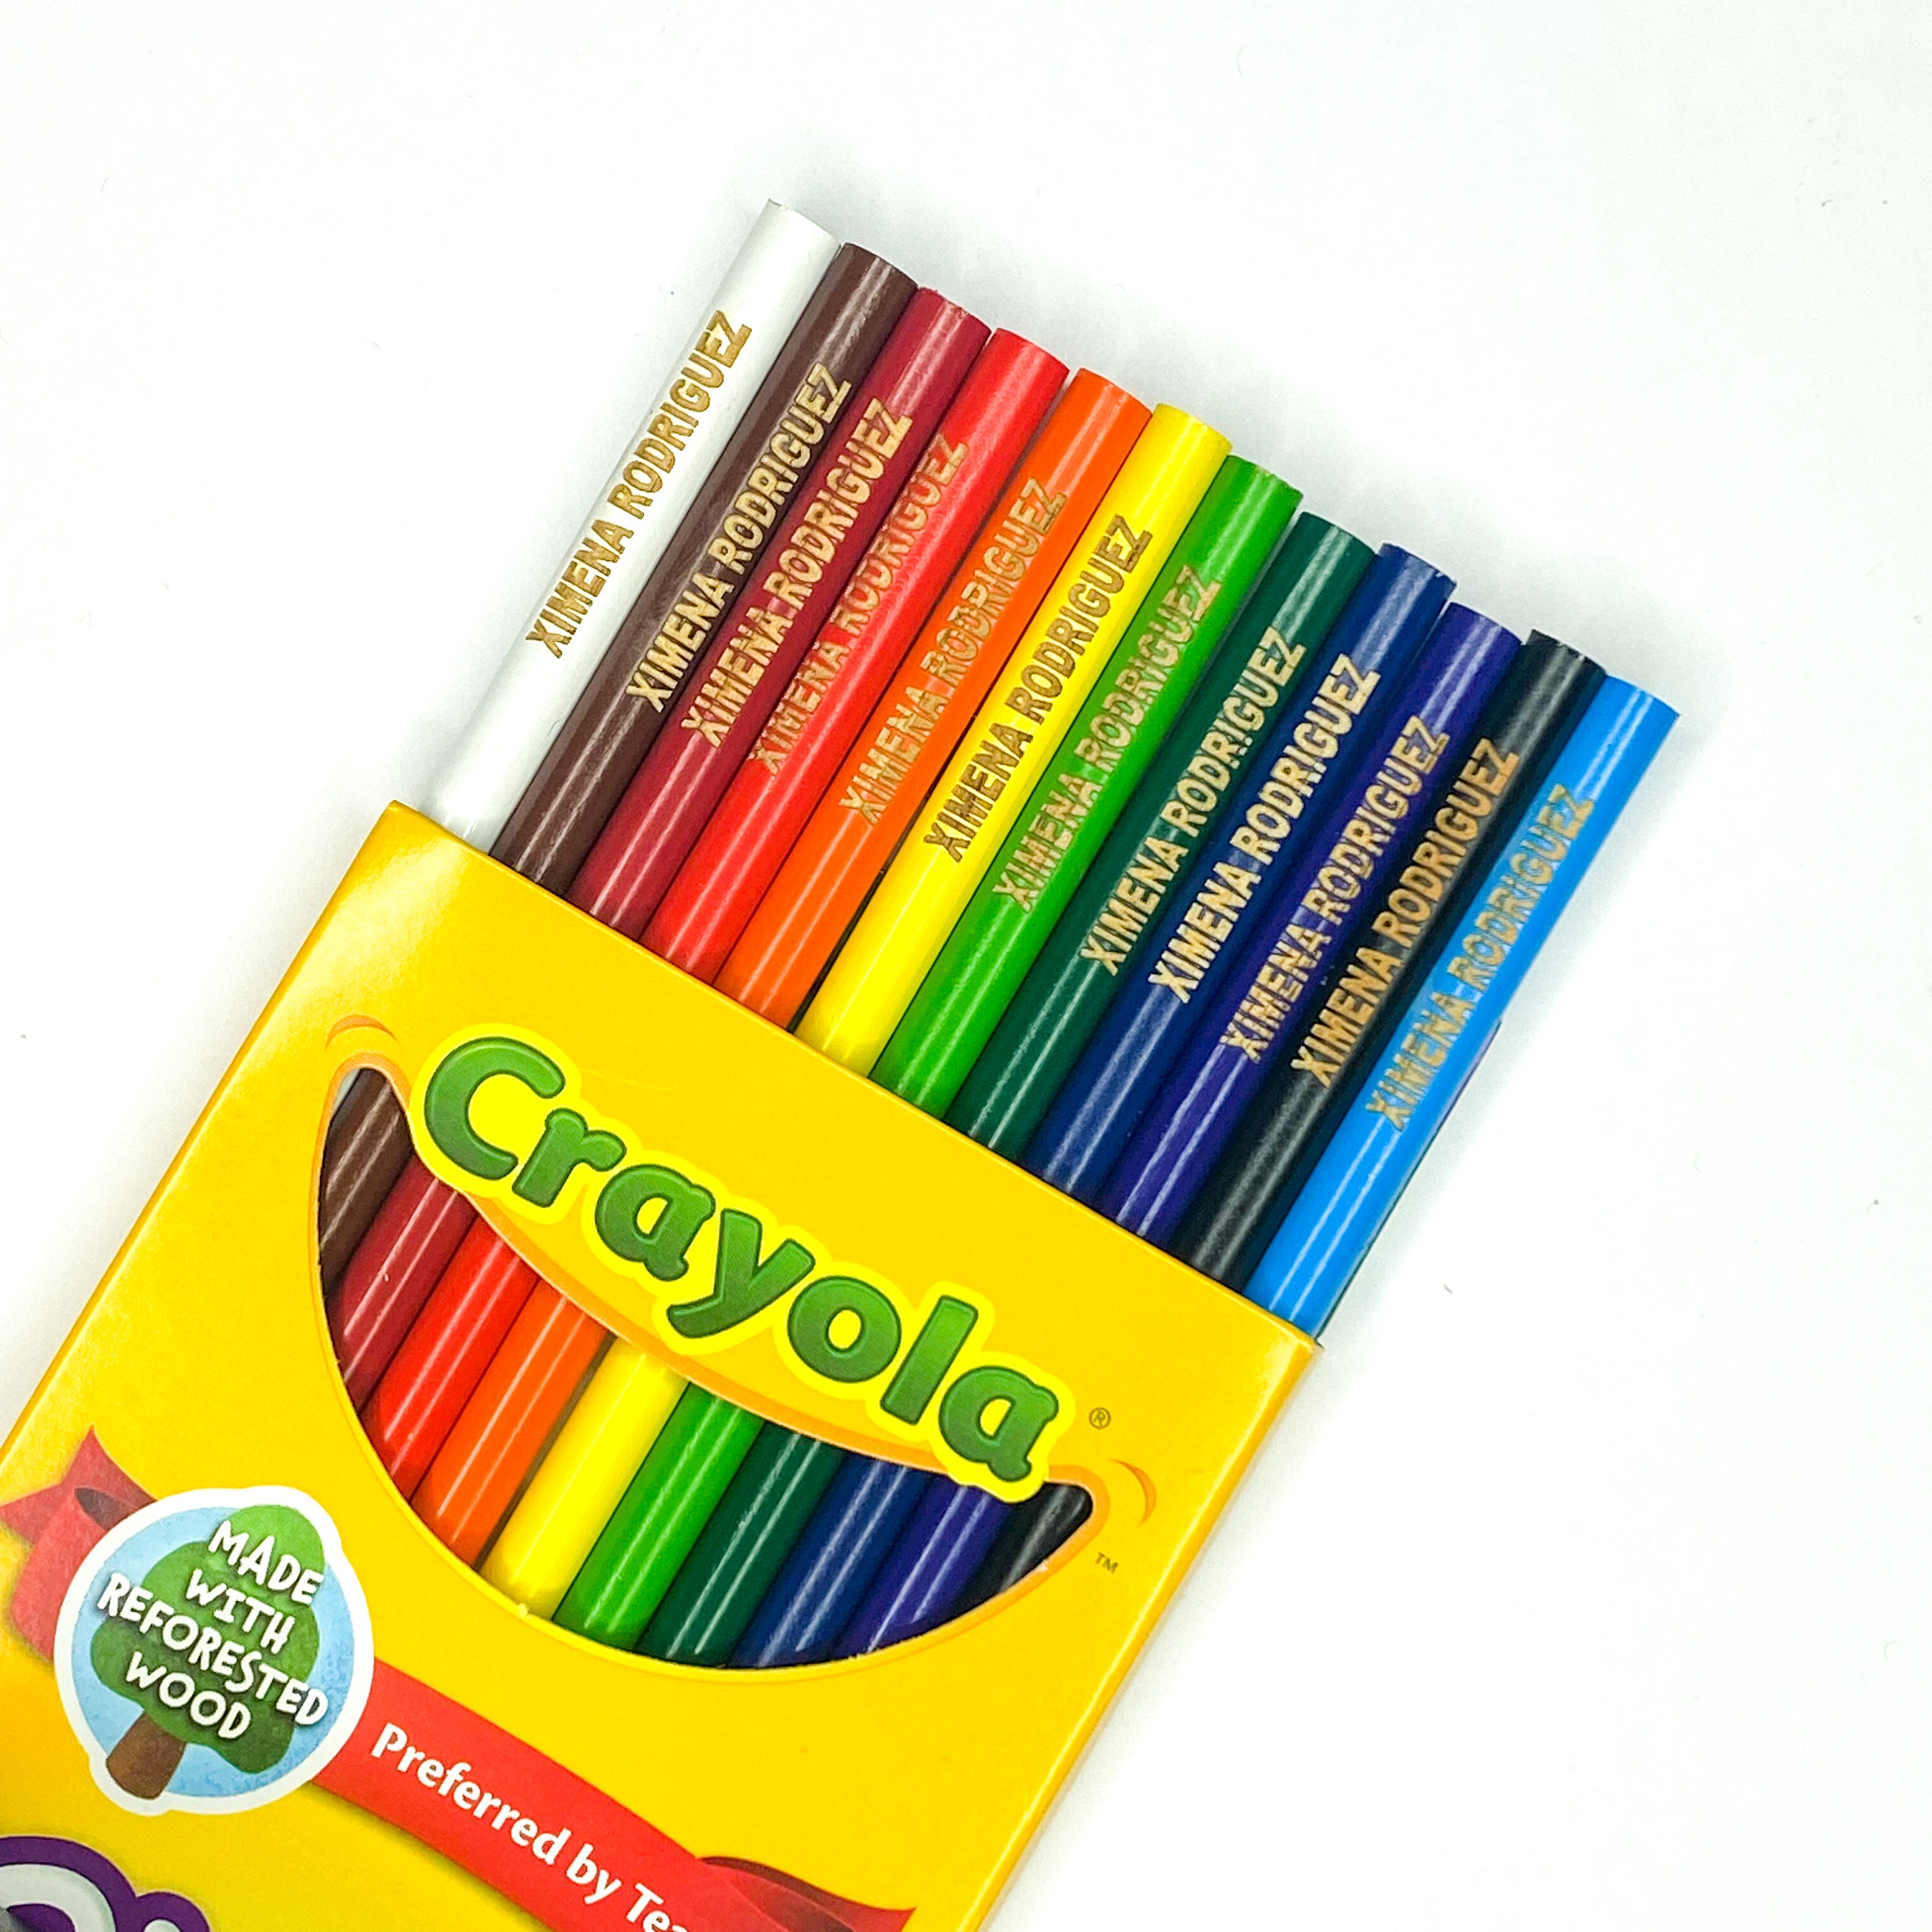 100 Crayola Color Pencil Coloring Swatch Chart, Printable PDF 